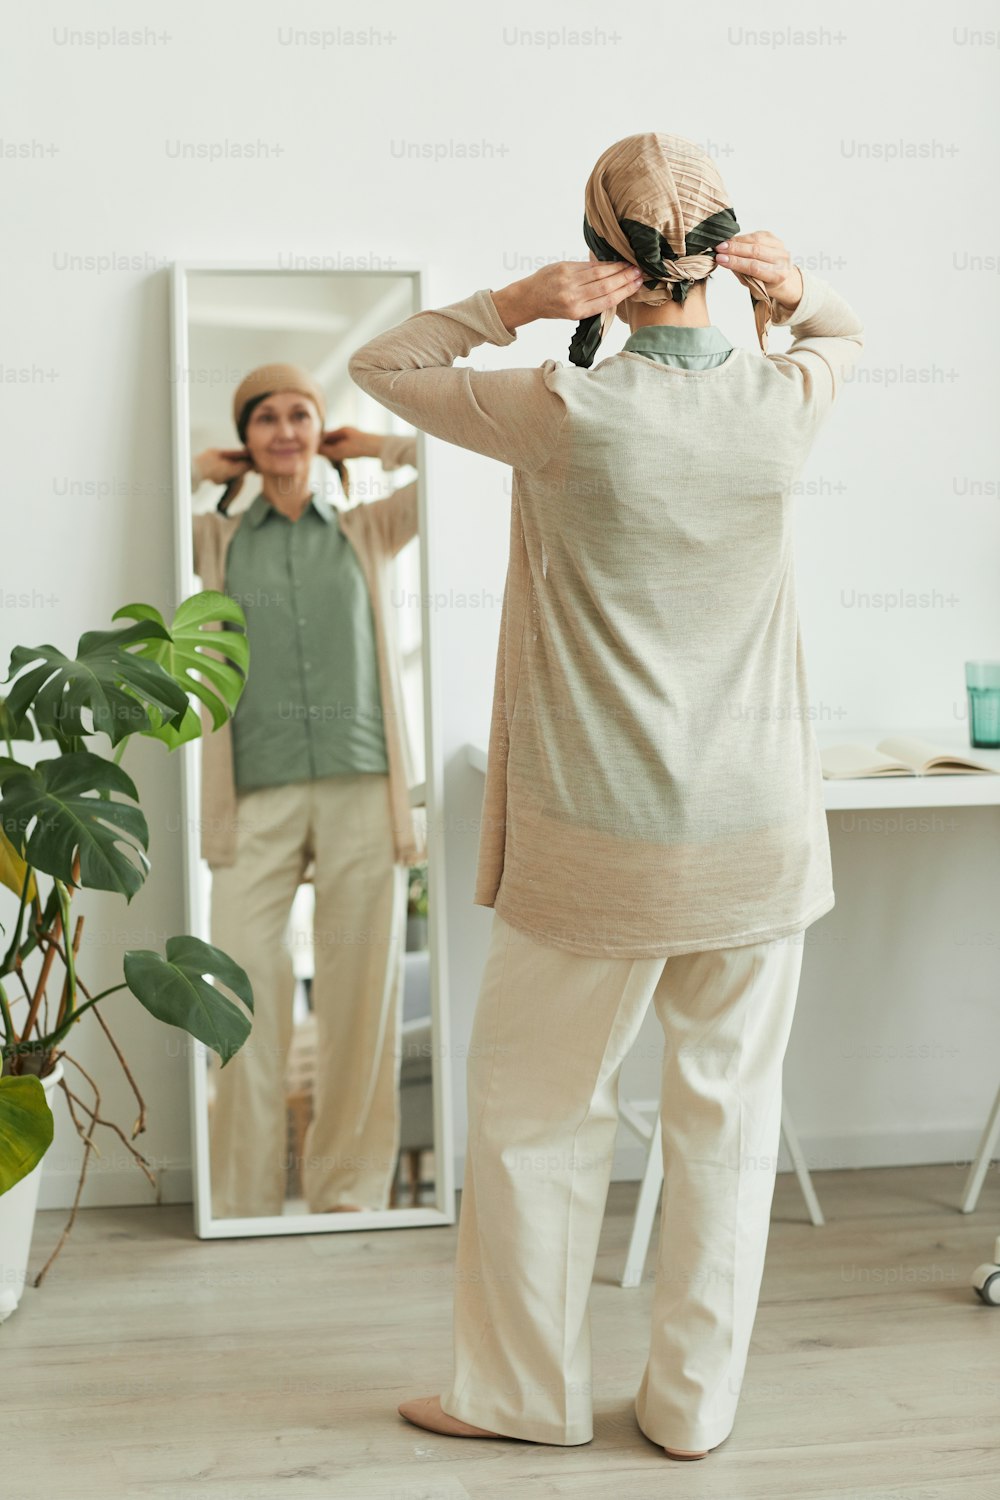 Rückenansicht in voller Länge bei reifer Frau, die am Spiegel ein Kopftuch aufsetzt und sich auf das Ausgehen vorbereitet